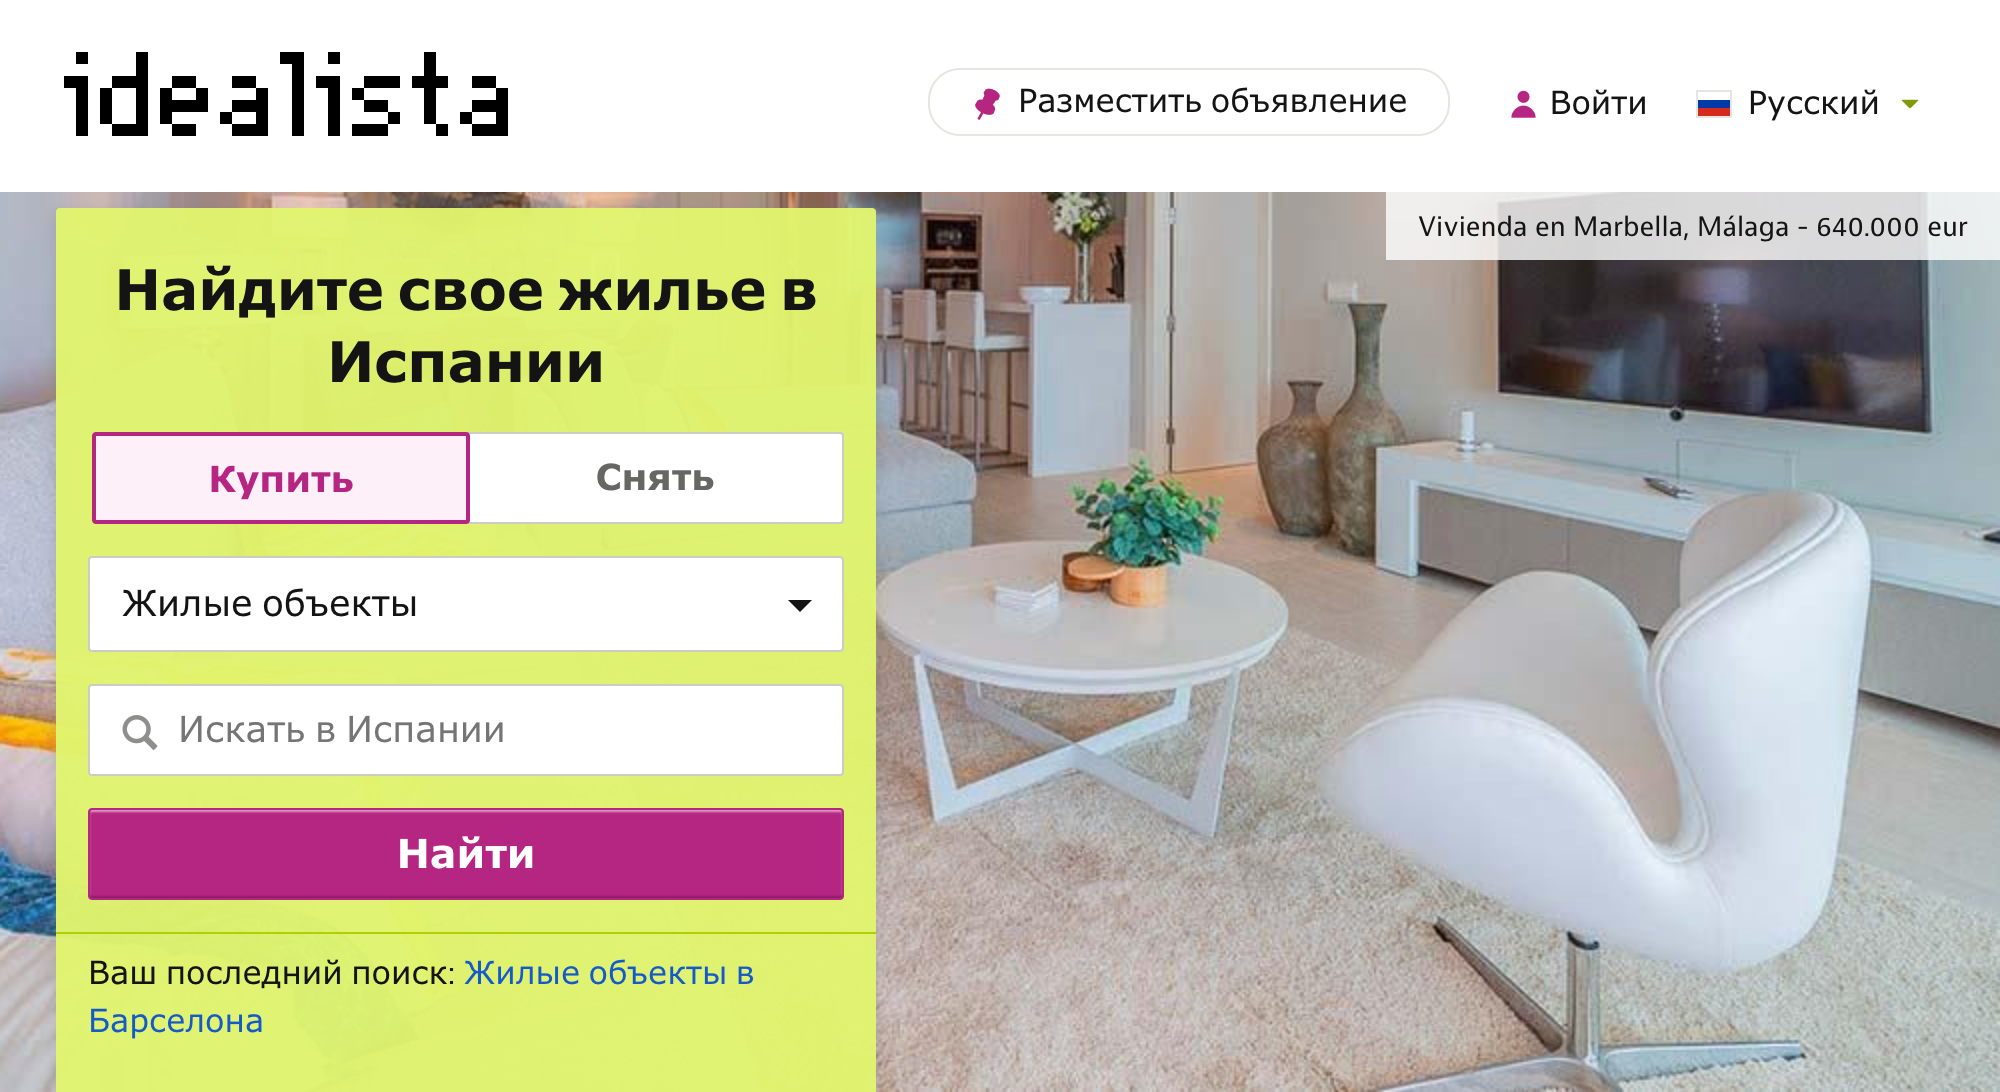 Так выглядит главная страница «Идеалисты» — сайта поиска недвижимости в Испании на русском языке